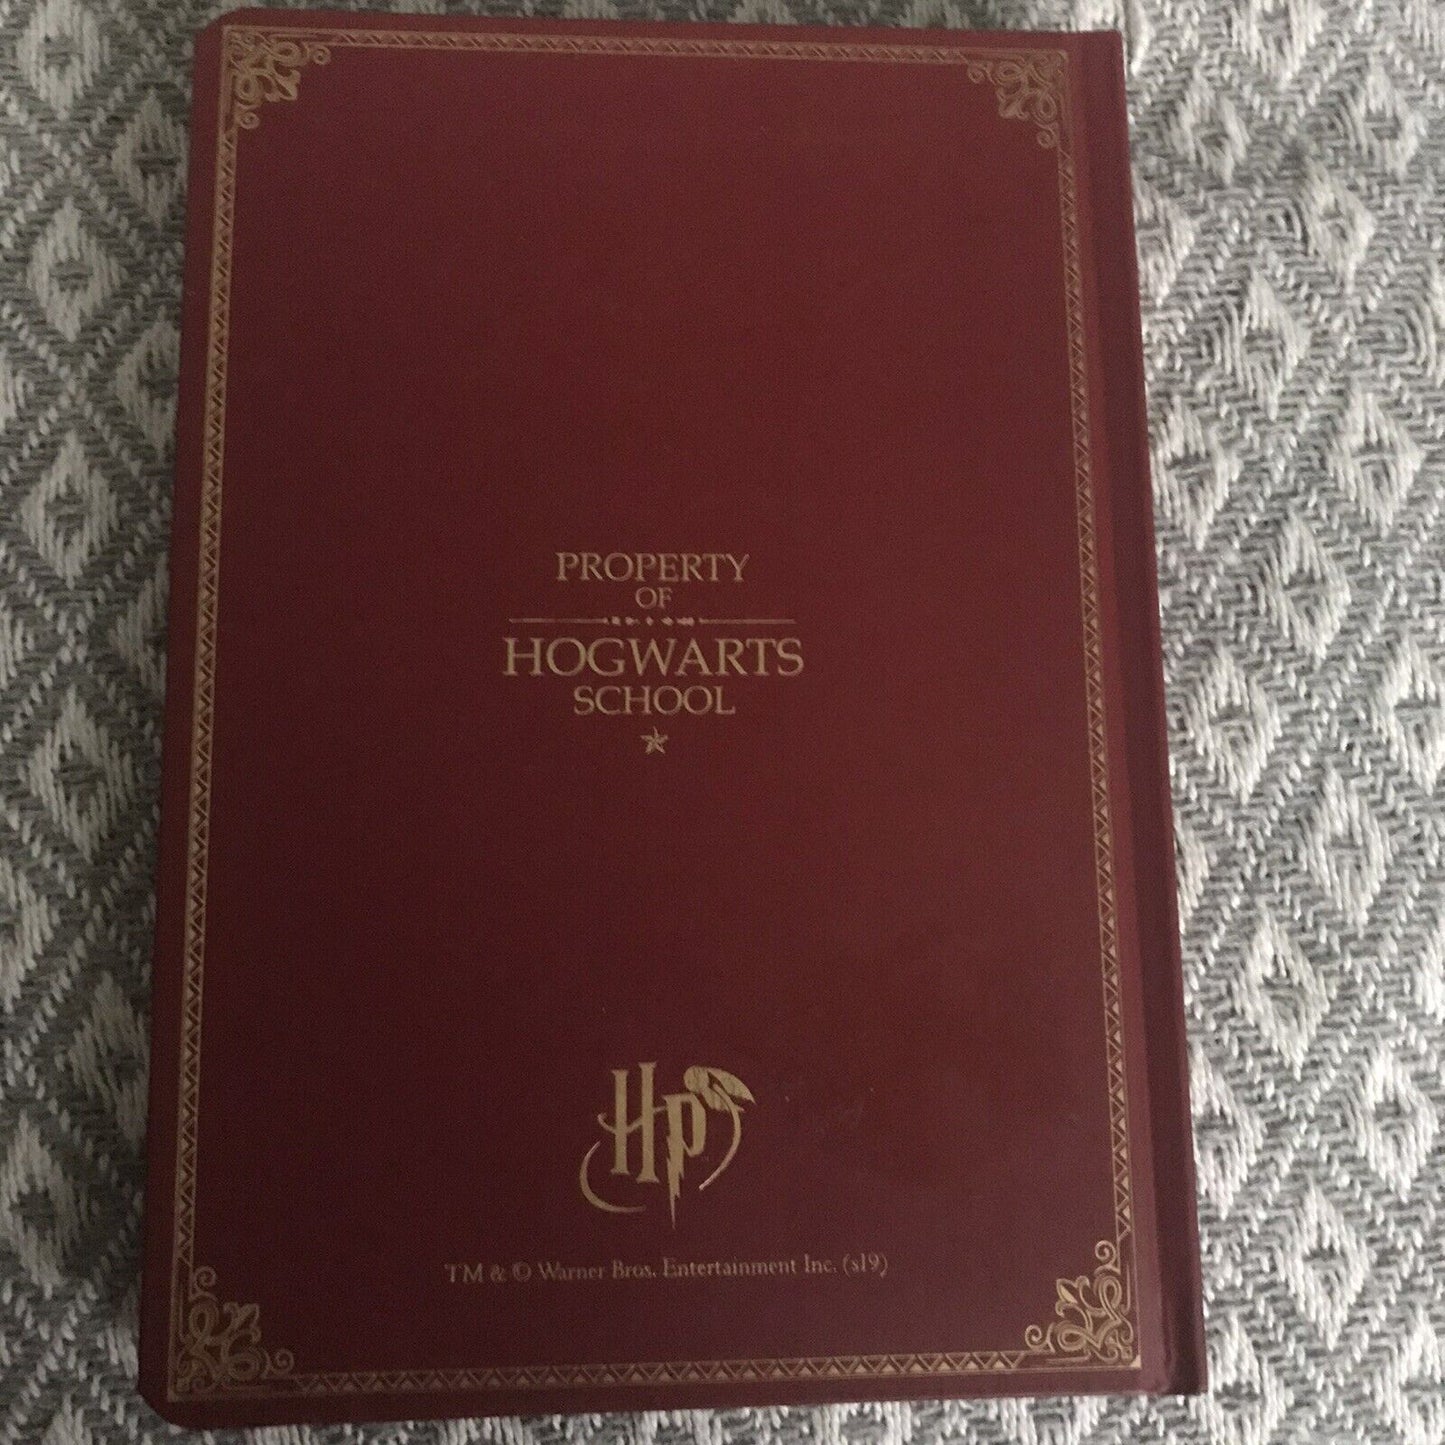 Hogwarts-Schulnotizbuch (gebundene Ausgabe, unbenutzt)